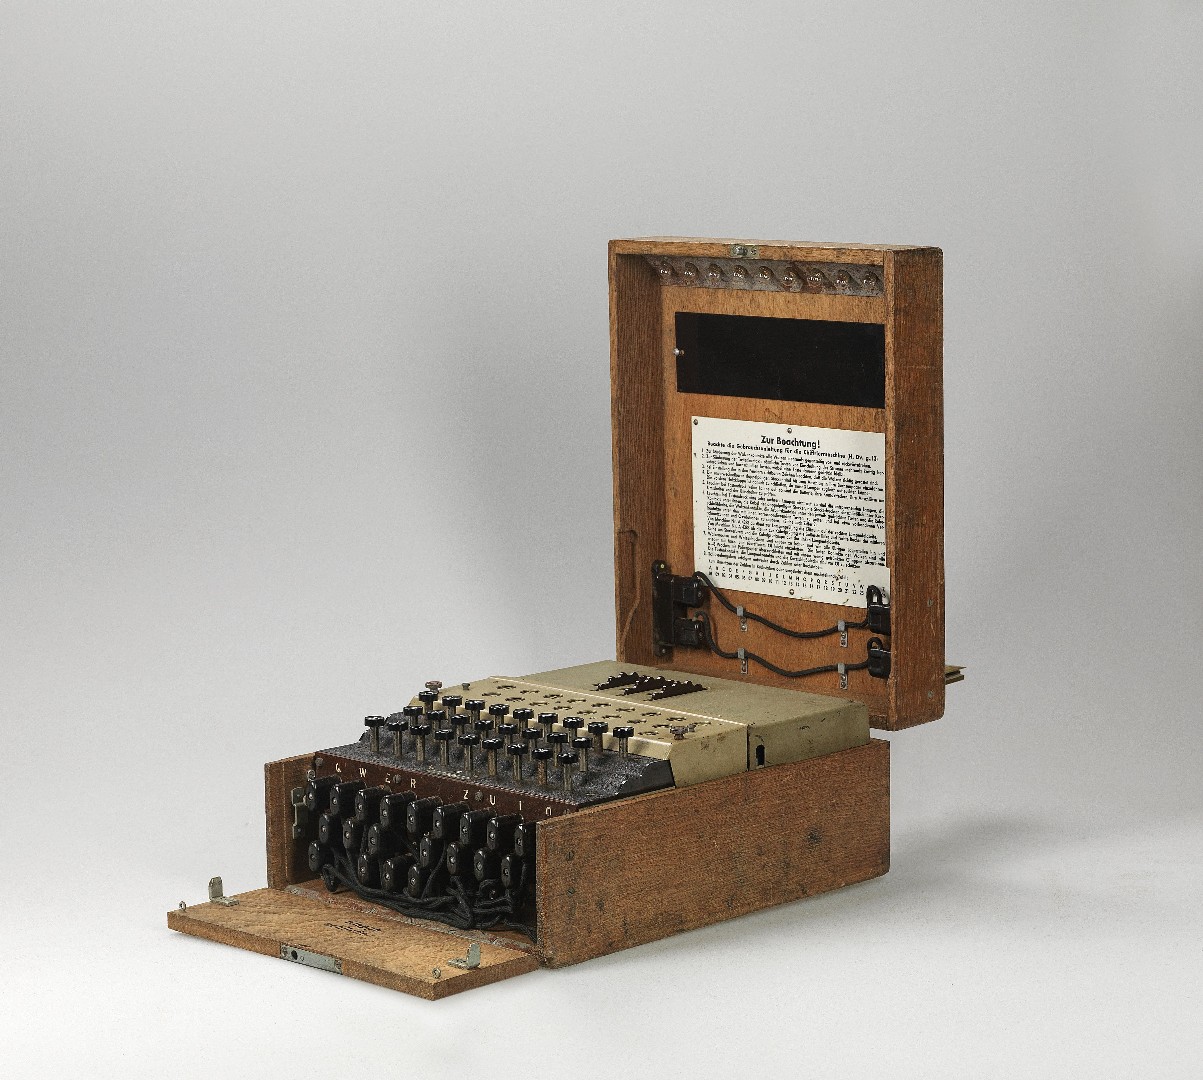 Šifrovací stroj Enigma I, Heimsoeth und Rinke, Berlín, 1944 rozměry kufru 38 x 28 x 15,5 cm cena: 117 800 € Dorotheum Vídeň 4. 6. 2020